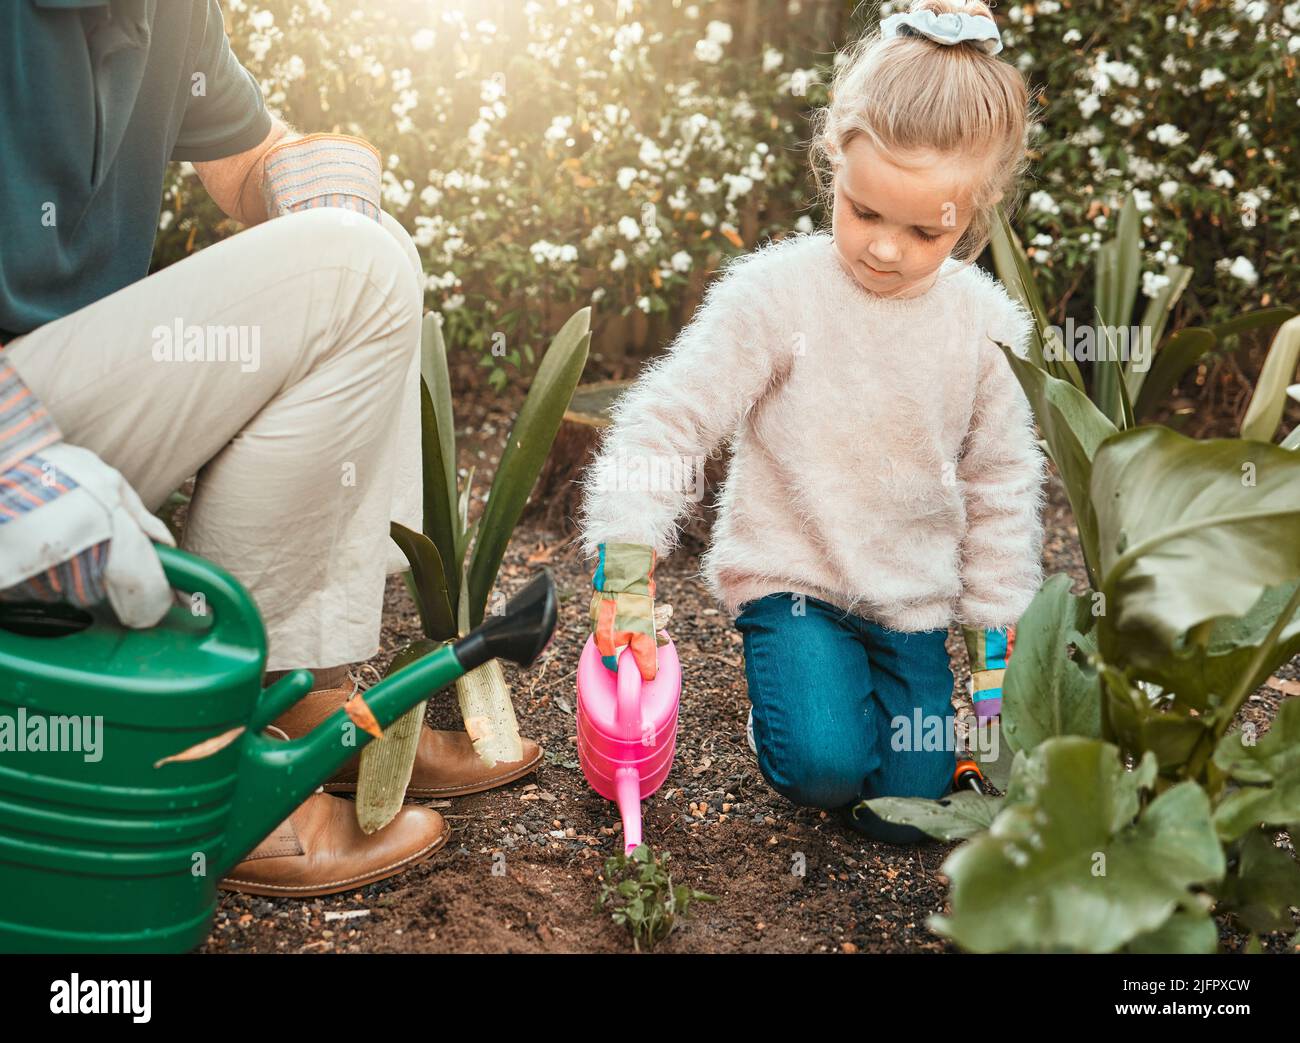 Garten, als ob Sie für immer leben werden. Aufnahme eines entzückenden kleinen Mädchens, das mit ihrem Großvater im Garten arbeitet. Stockfoto